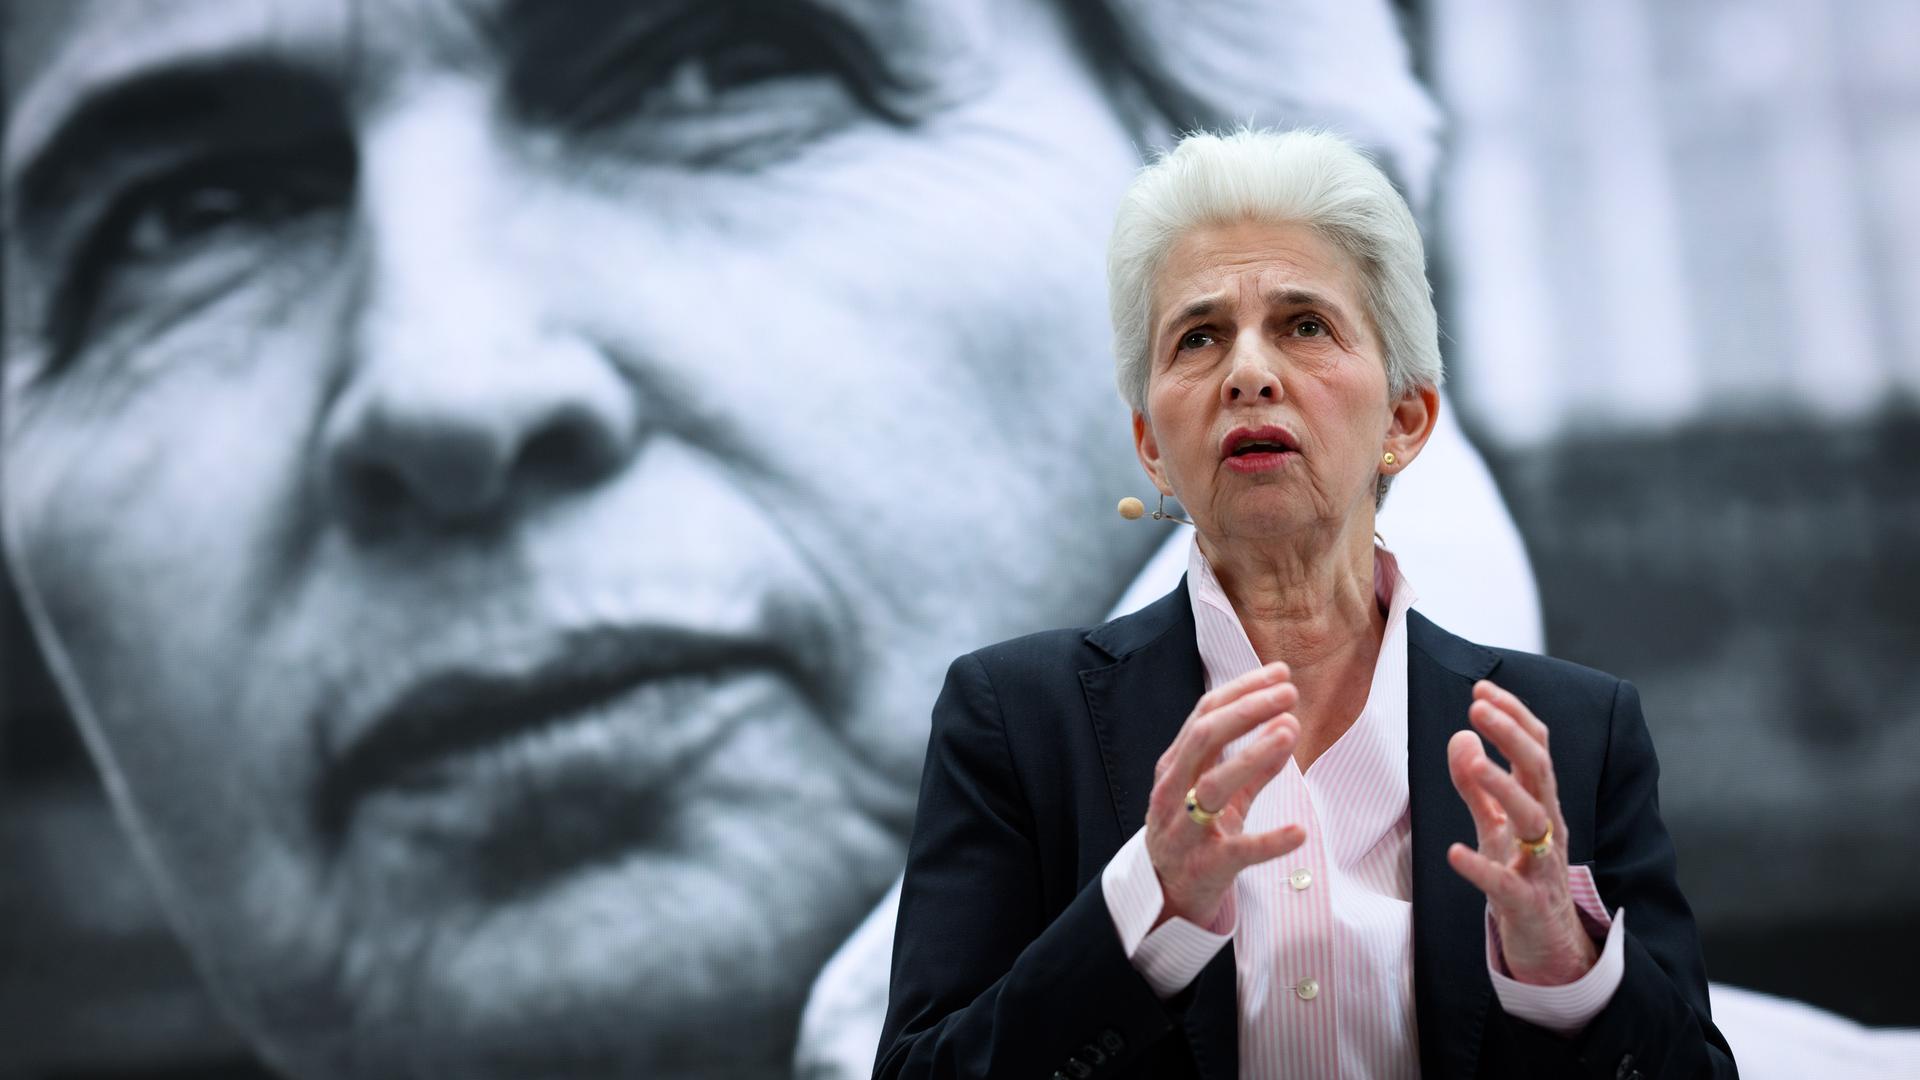 Marie-Agnes Strack-Zimmermann (FDP) steht im Hans-Dietrich-Genscher-Haus und hält eine Rede. Sie gestikuliert mit ihren Händen. Im Hintergrund ist ein Wahlplakat mit ihrem Konterfei zu erkennen. 